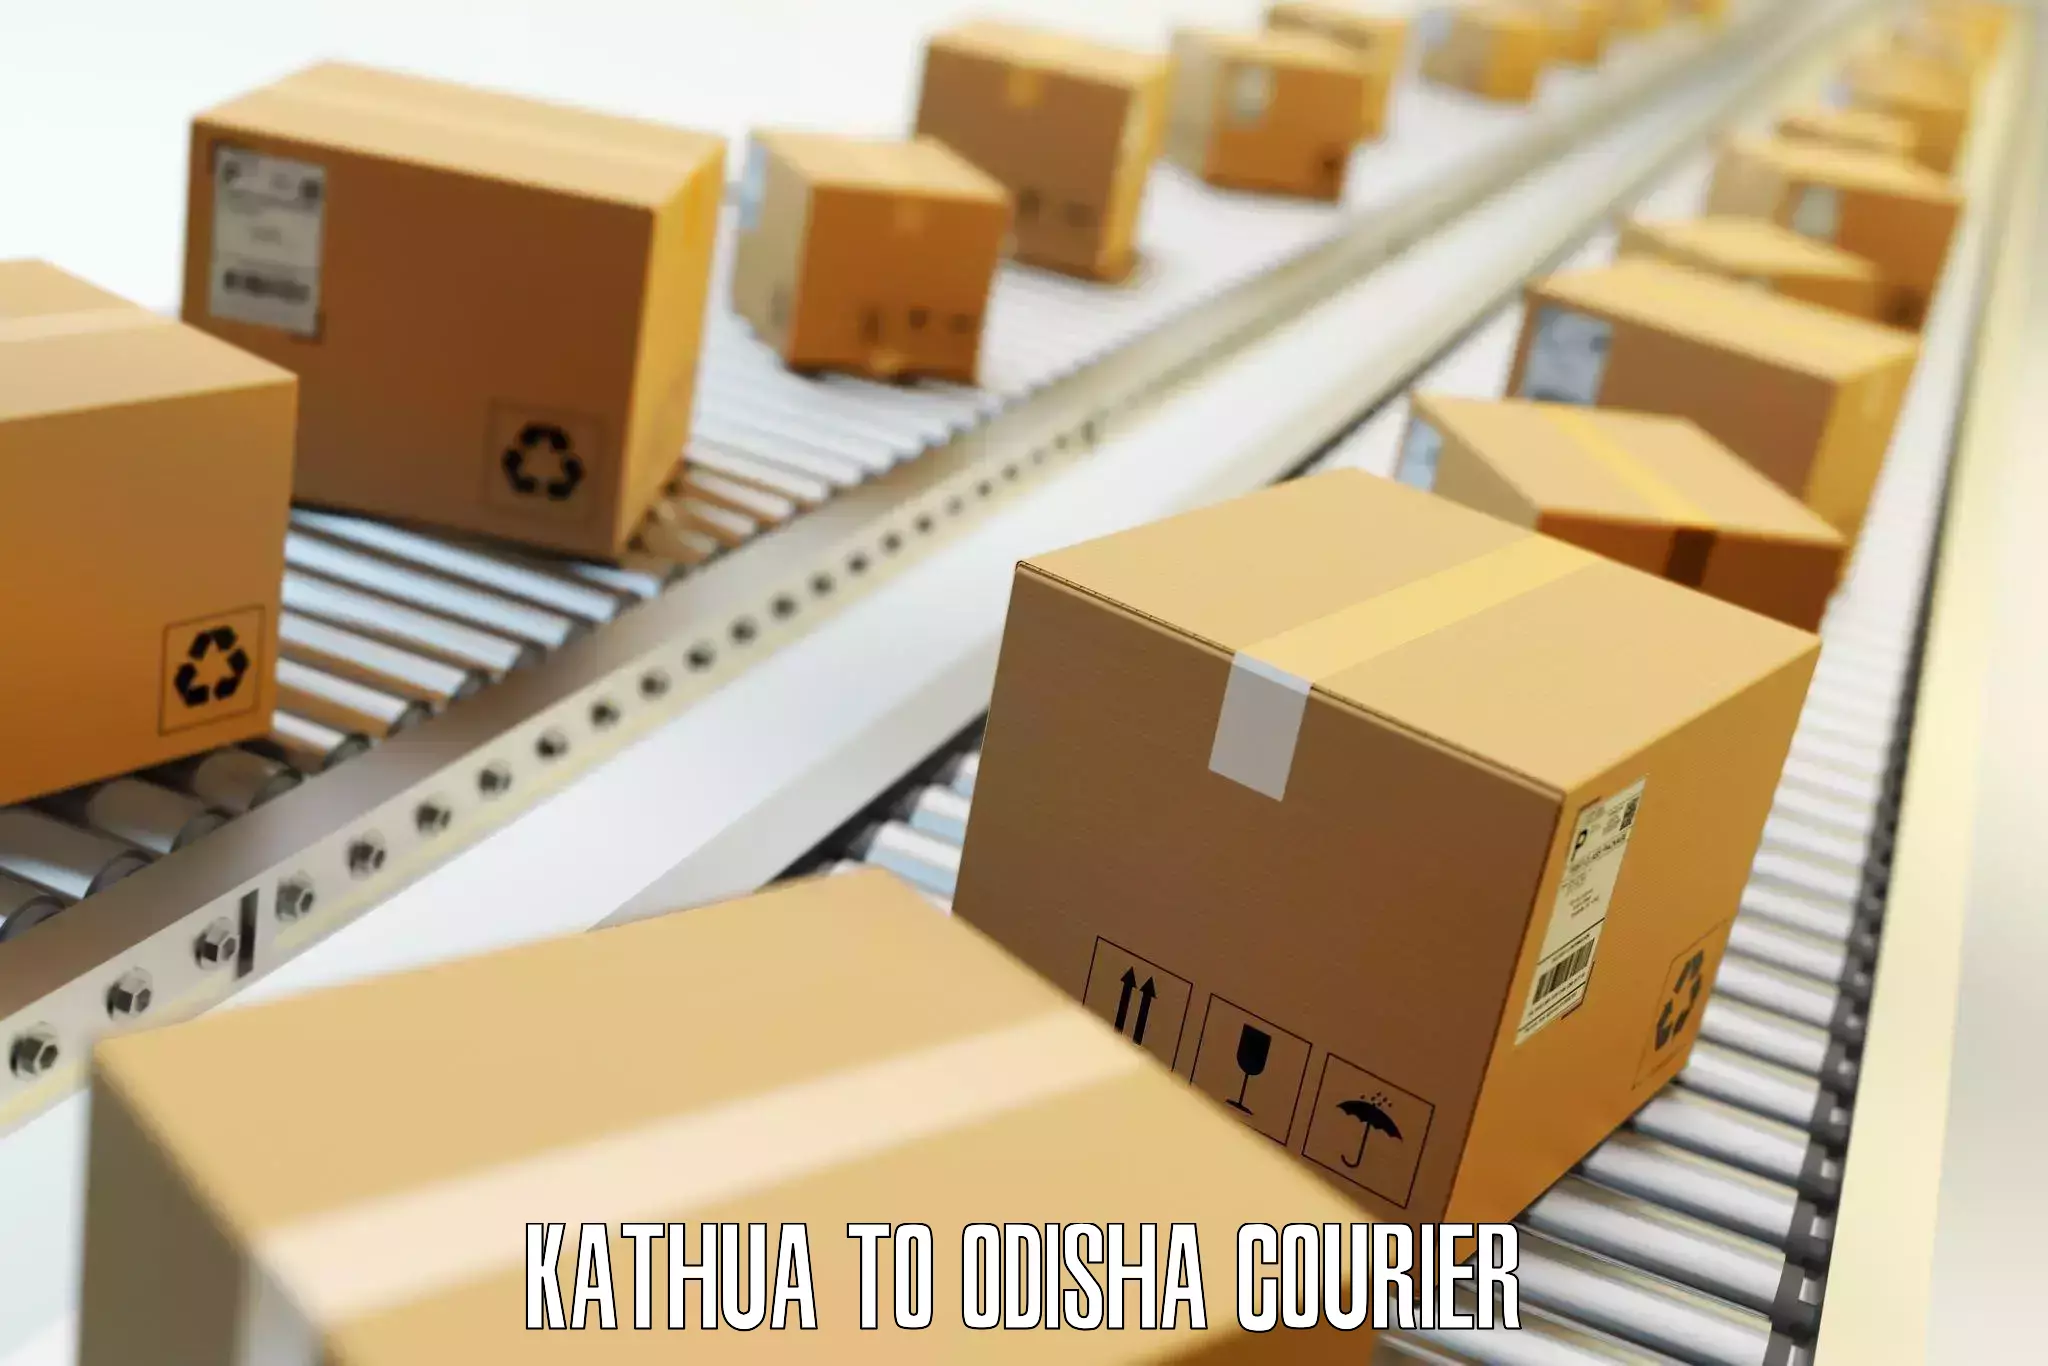 Online luggage shipping booking Kathua to Saintala